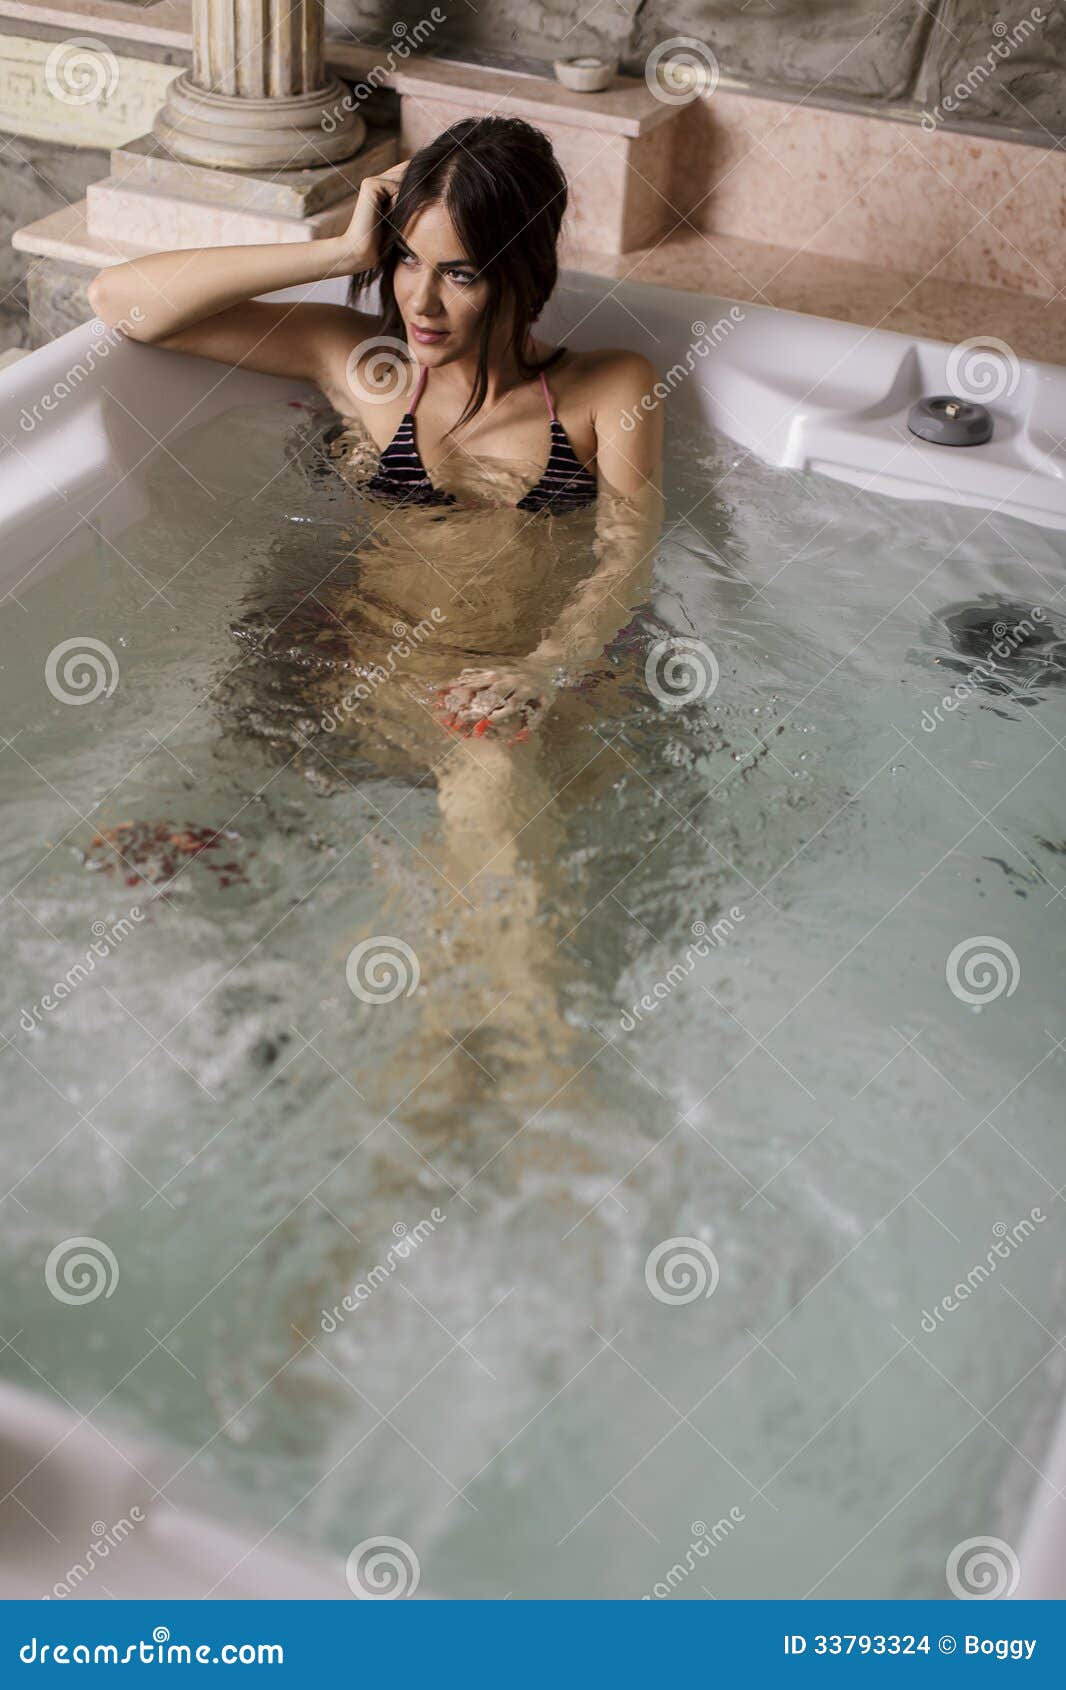 эротика голых девочек в ванной фото 65